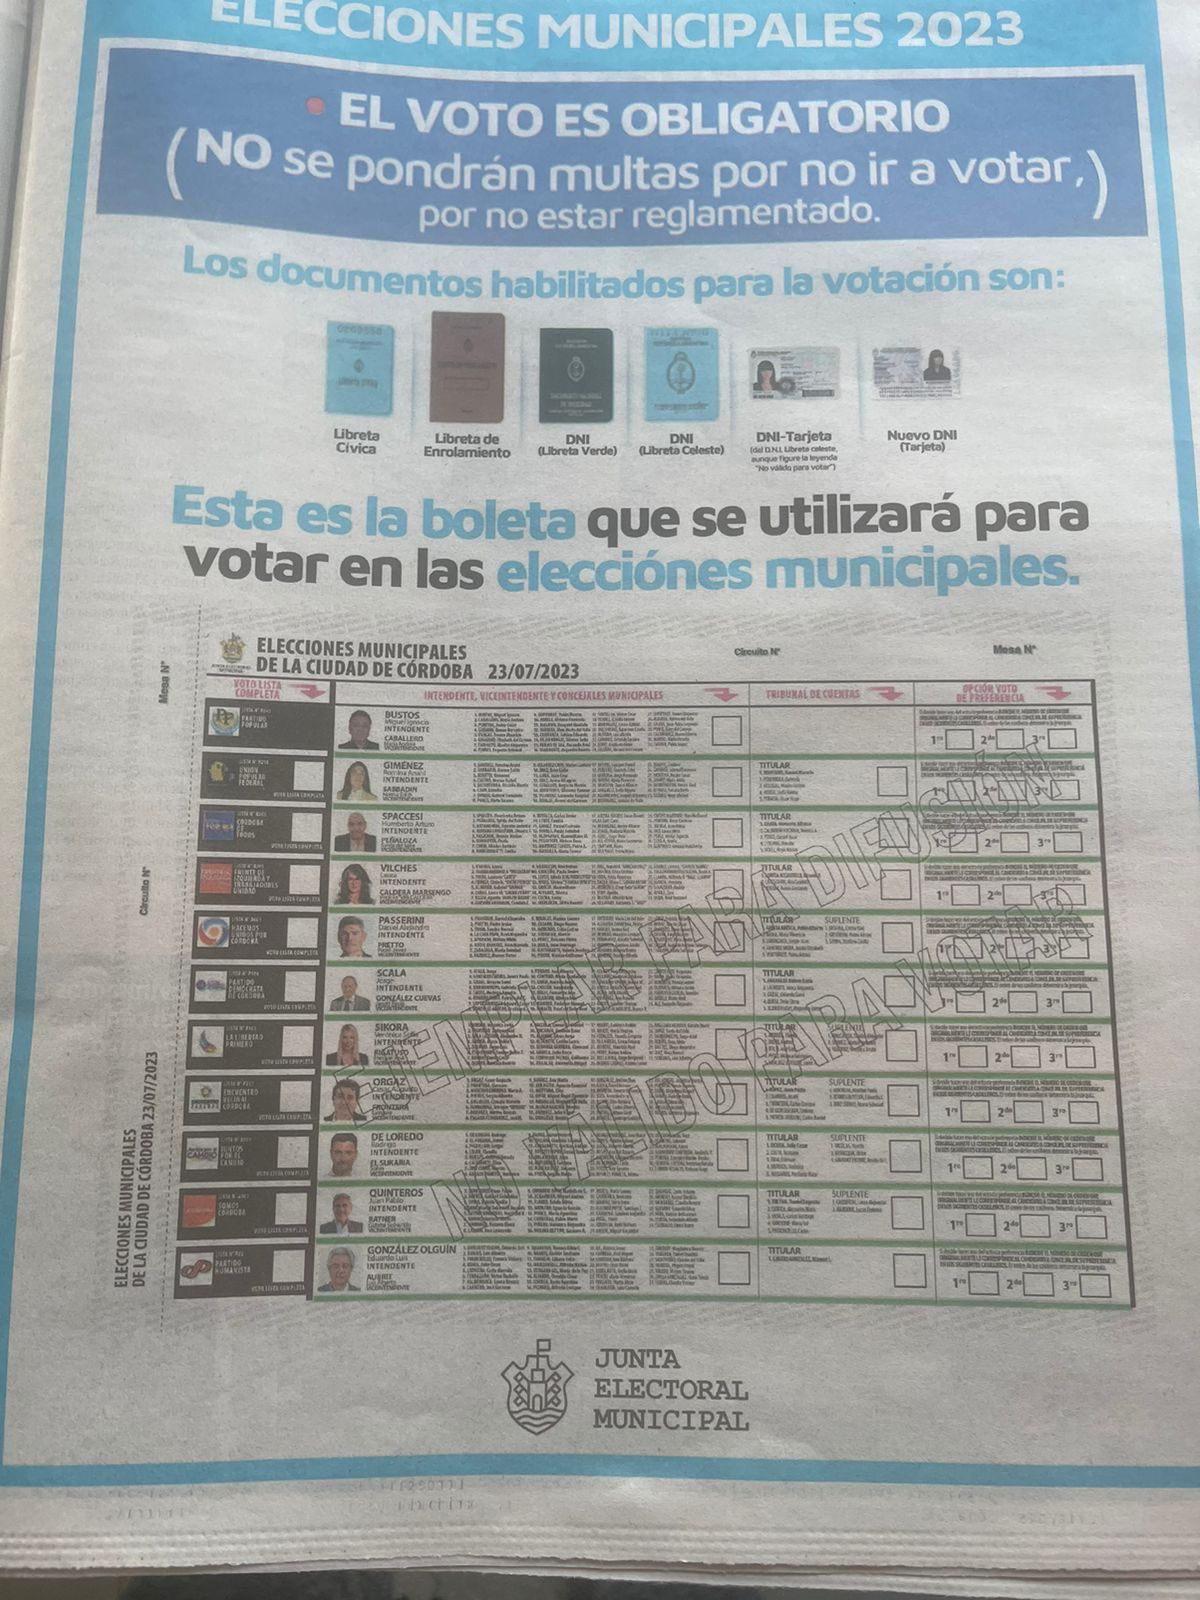 La solicitada difundida este sábado en redes sociales por la Junta Electoral Municipal de Córdoba Capital